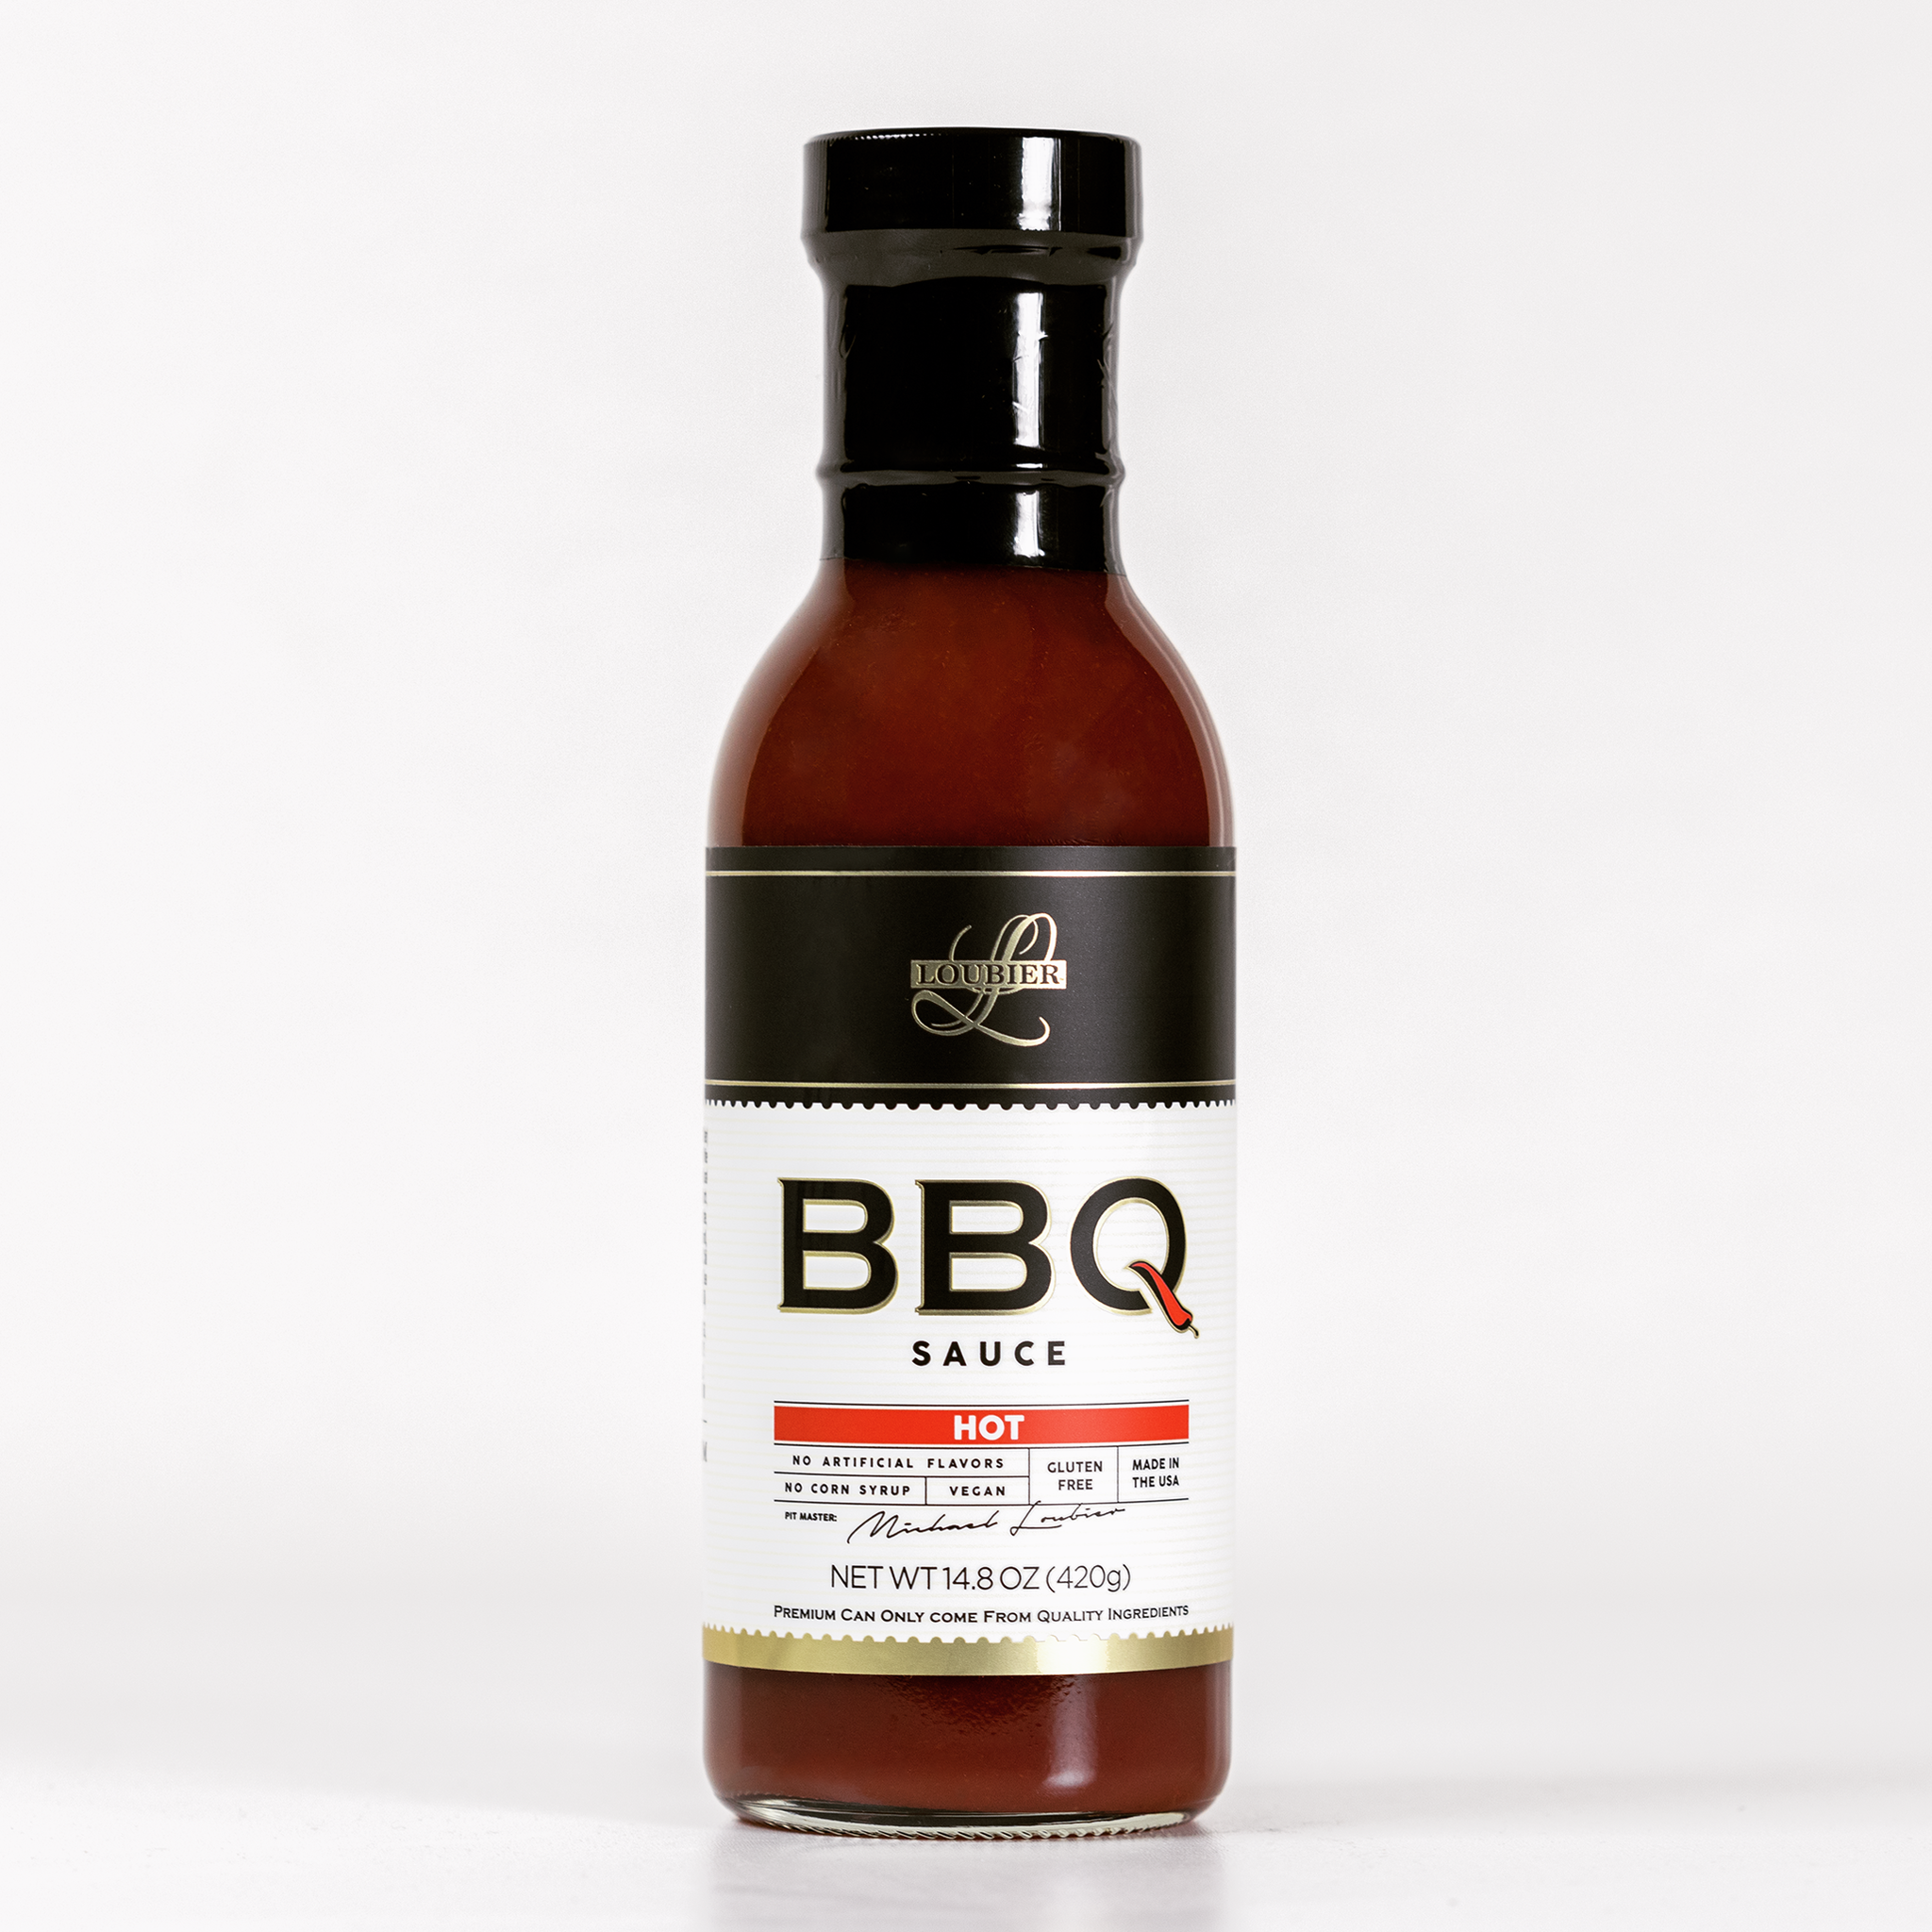 Premium Hot BBQ Sauce "Award Winning"